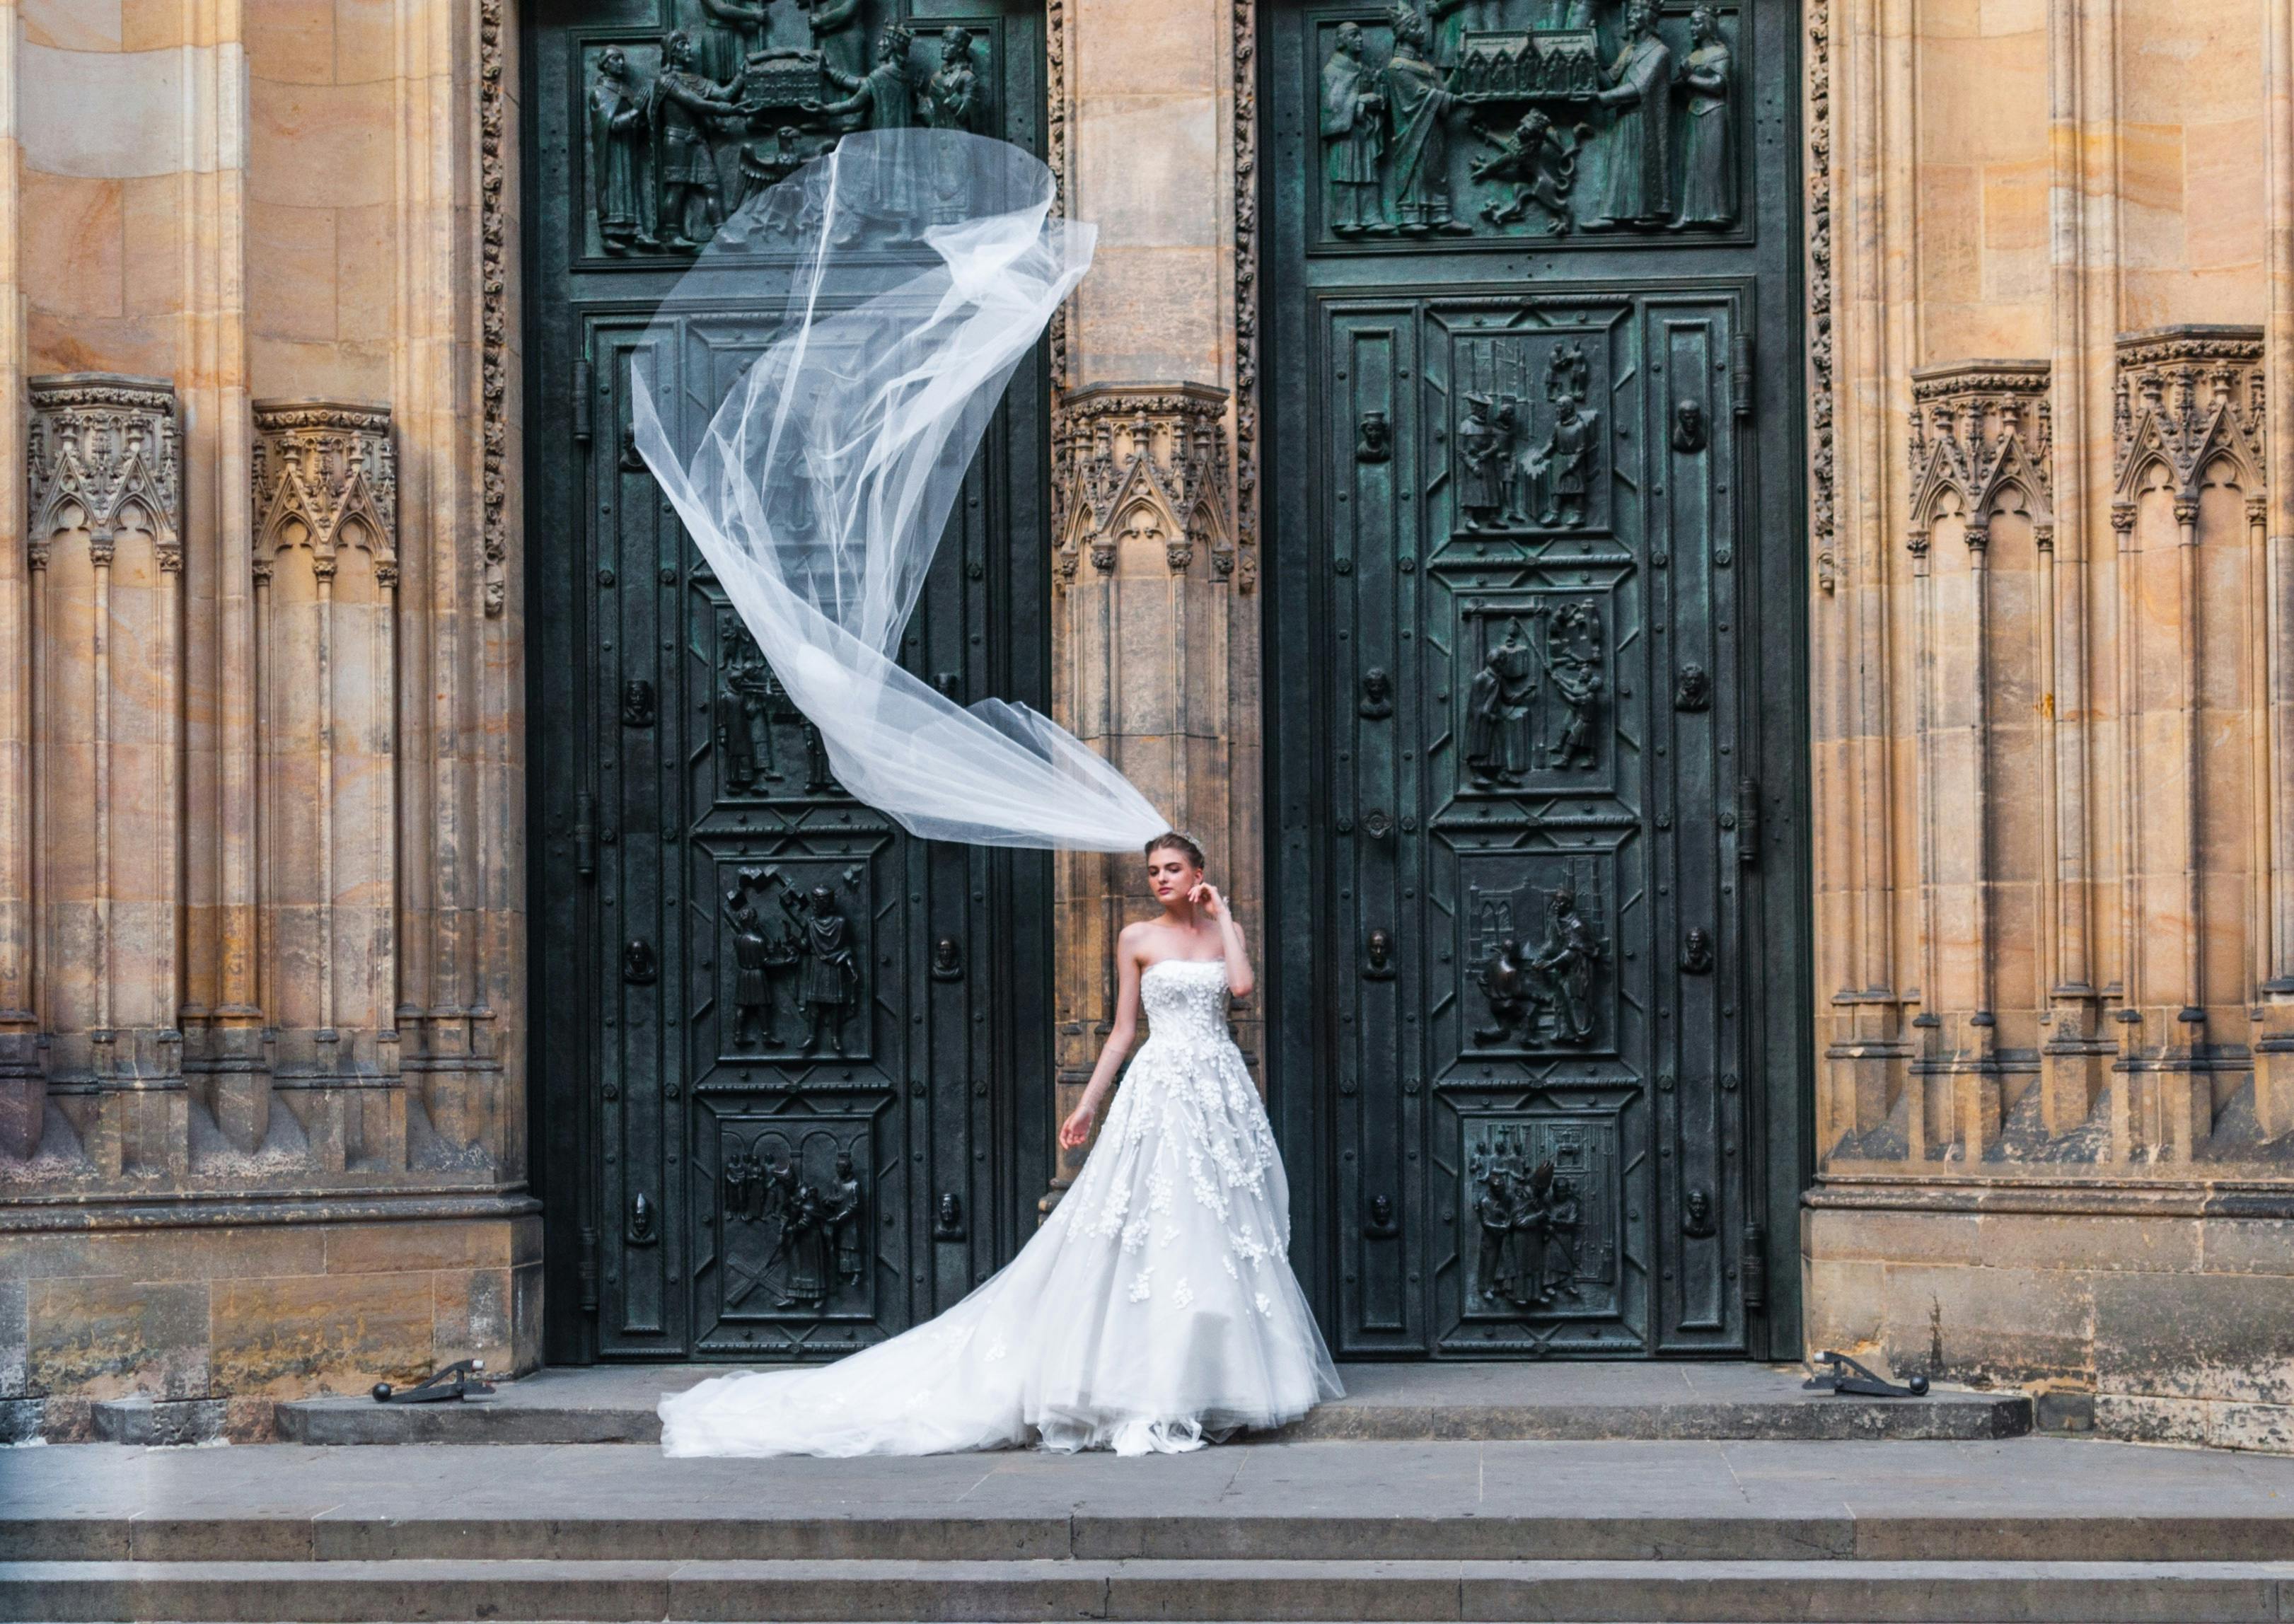 Una novia de pie ante unas puertas cerradas | Fuente: Pexels